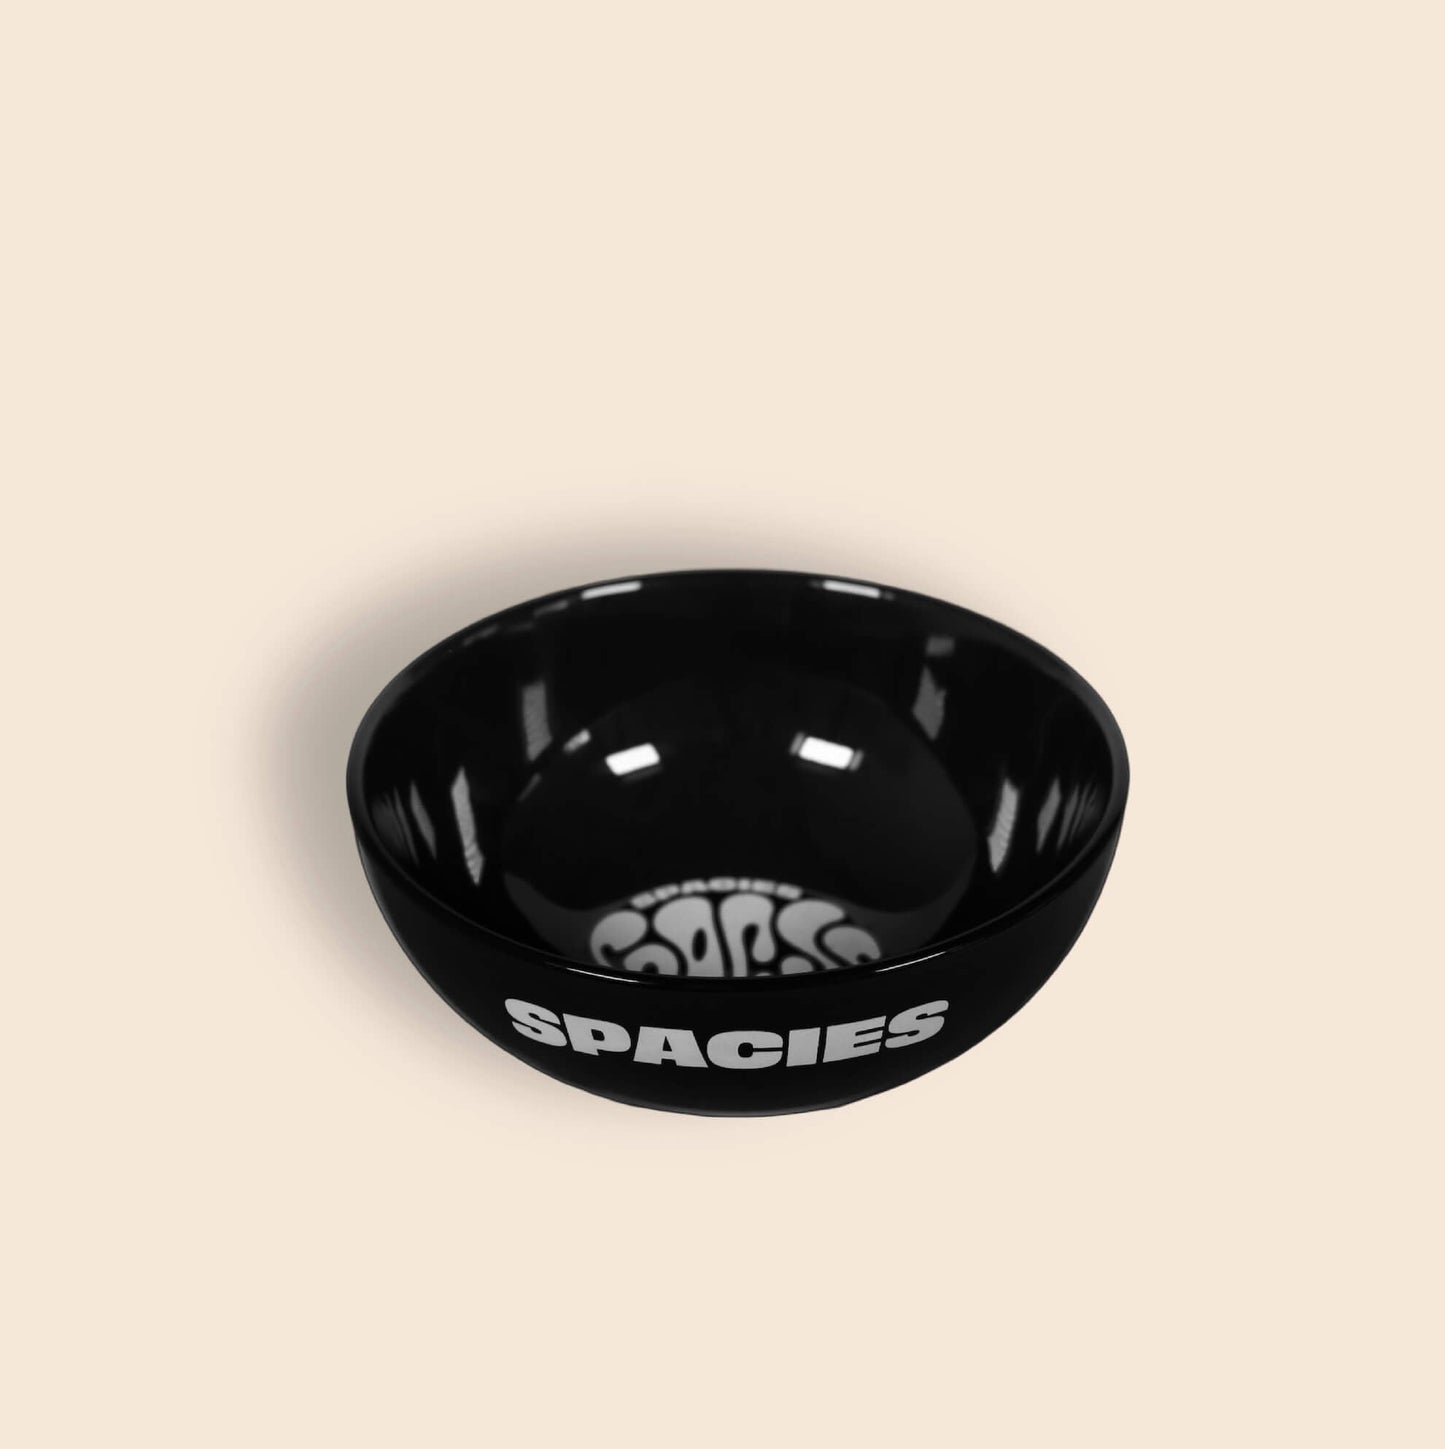 Spacies Bowl: Orbital Black (Reward)